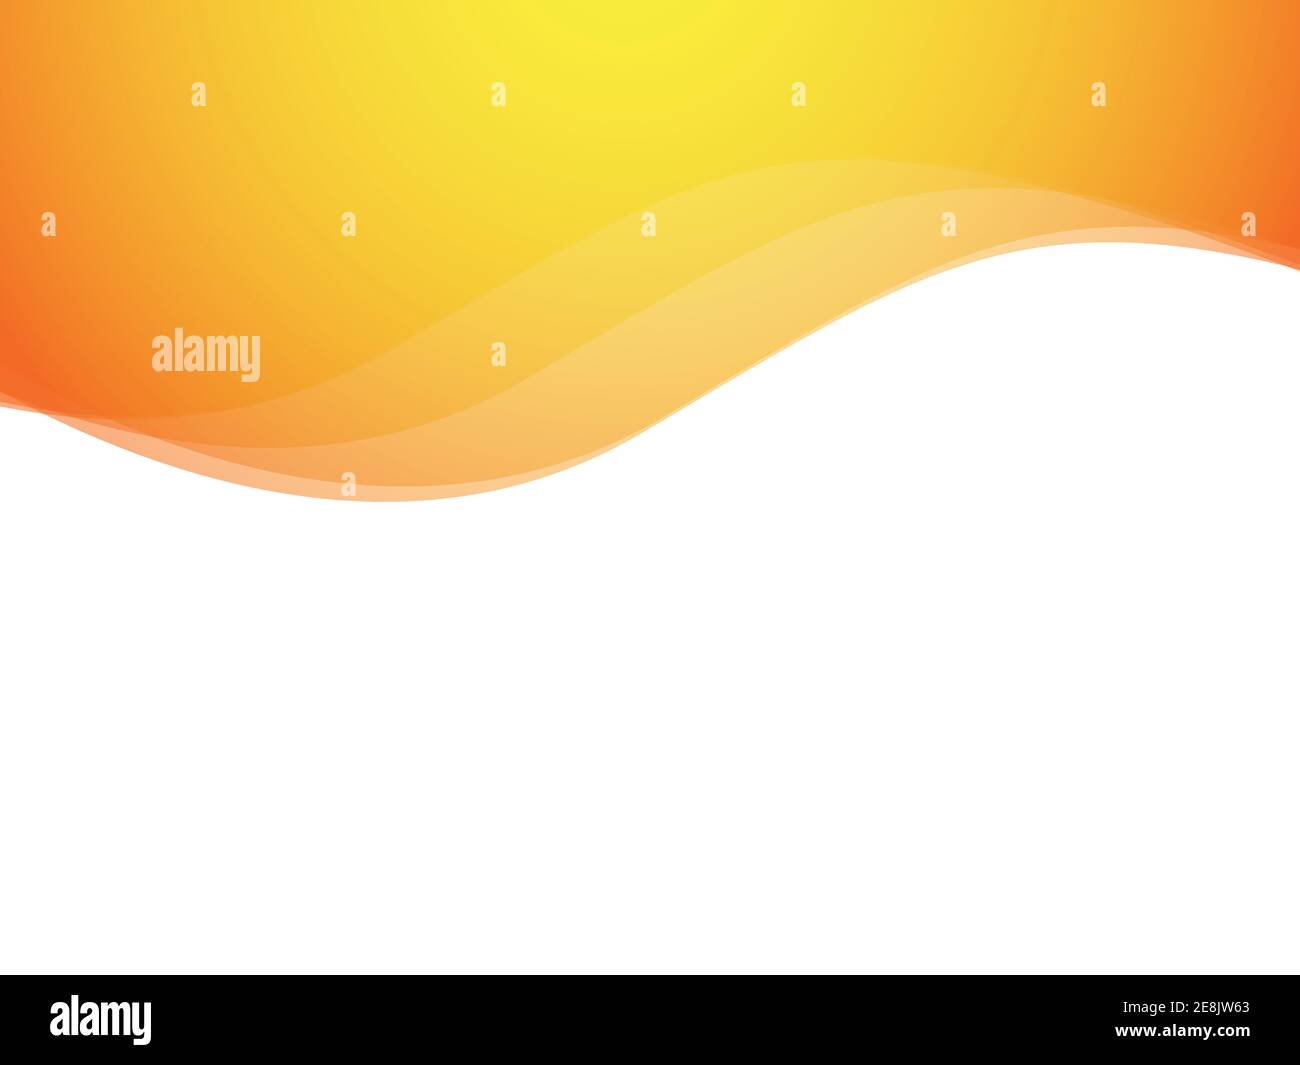 Đây là một hình ảnh nền trừu tượng đường cong màu cam, sóng cam, thiết kế với chỗ để chèn văn bản rất tinh tế. Với đường cong mềm mại, màu sắc tươi sáng, hình ảnh này xứng đáng là một tác phẩm nghệ thuật tuyệt vời.